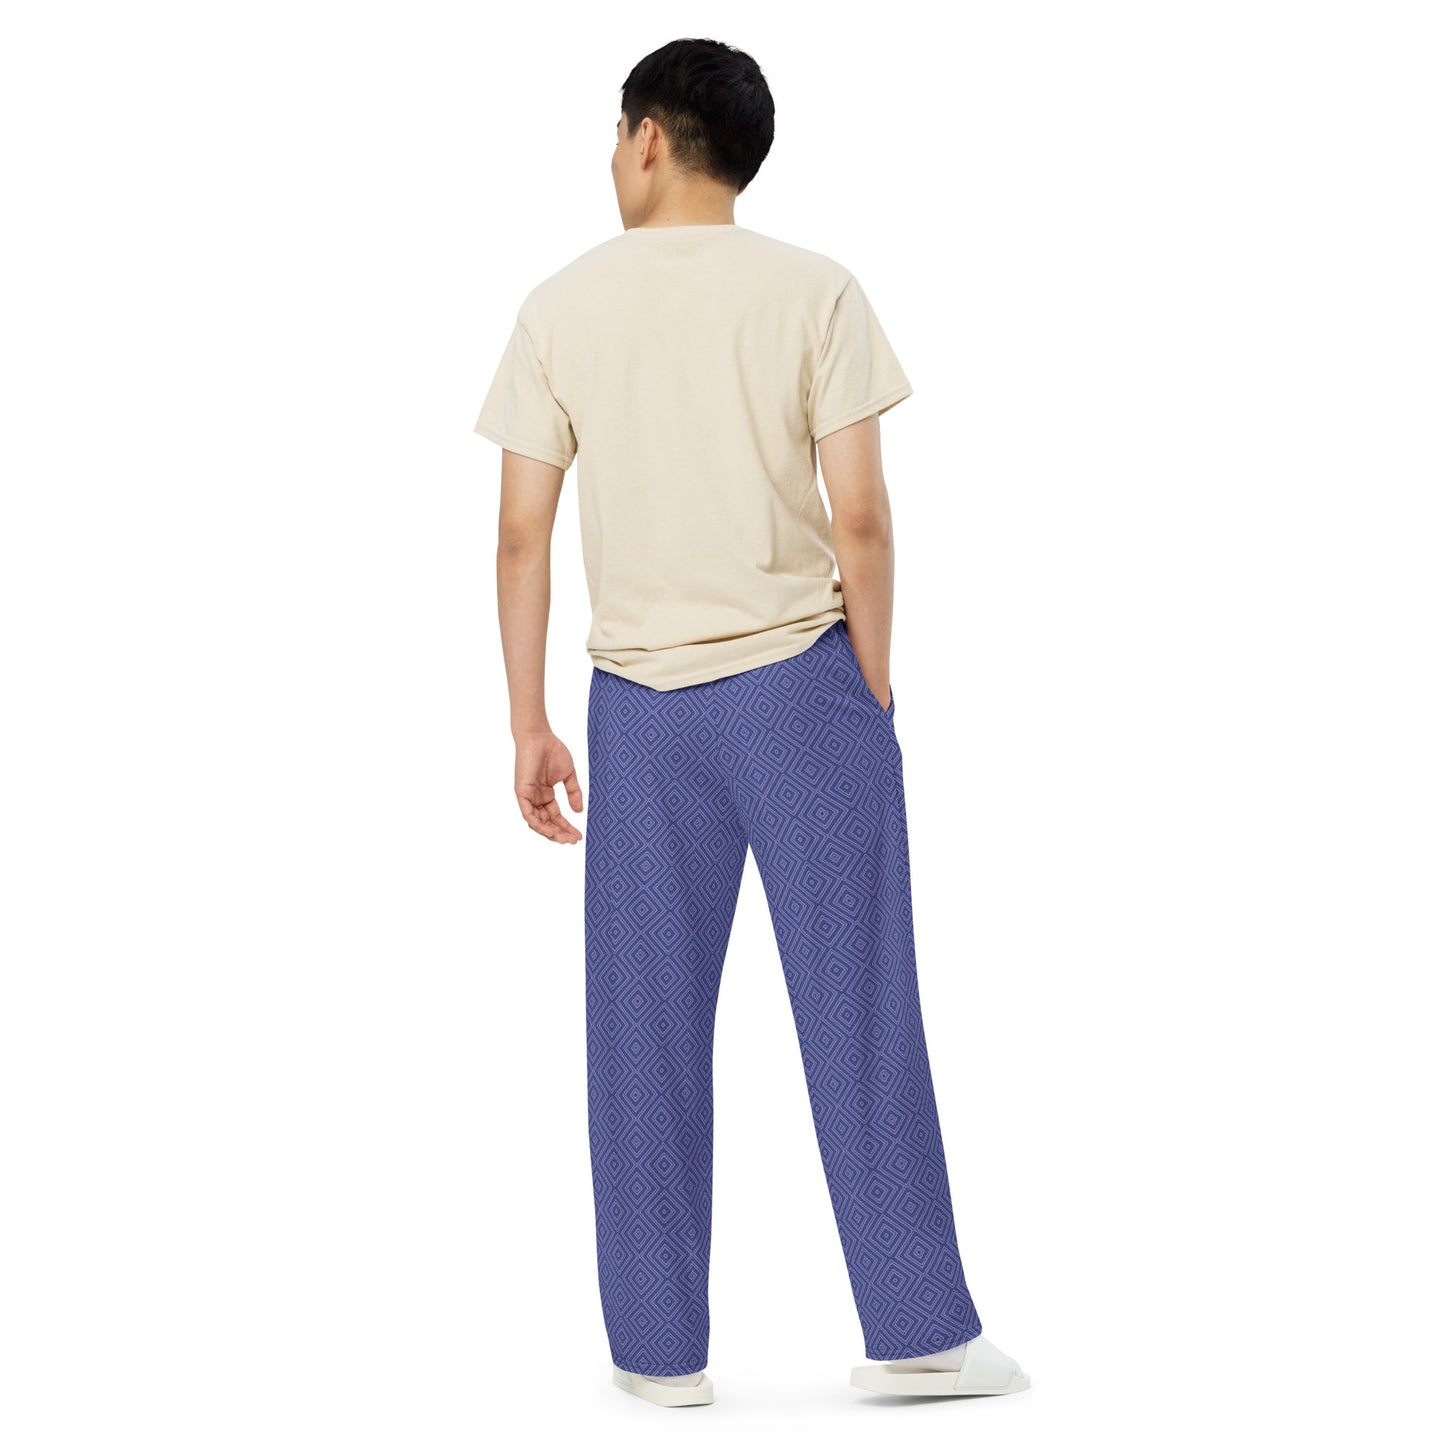 Symmetra wide-leg pants